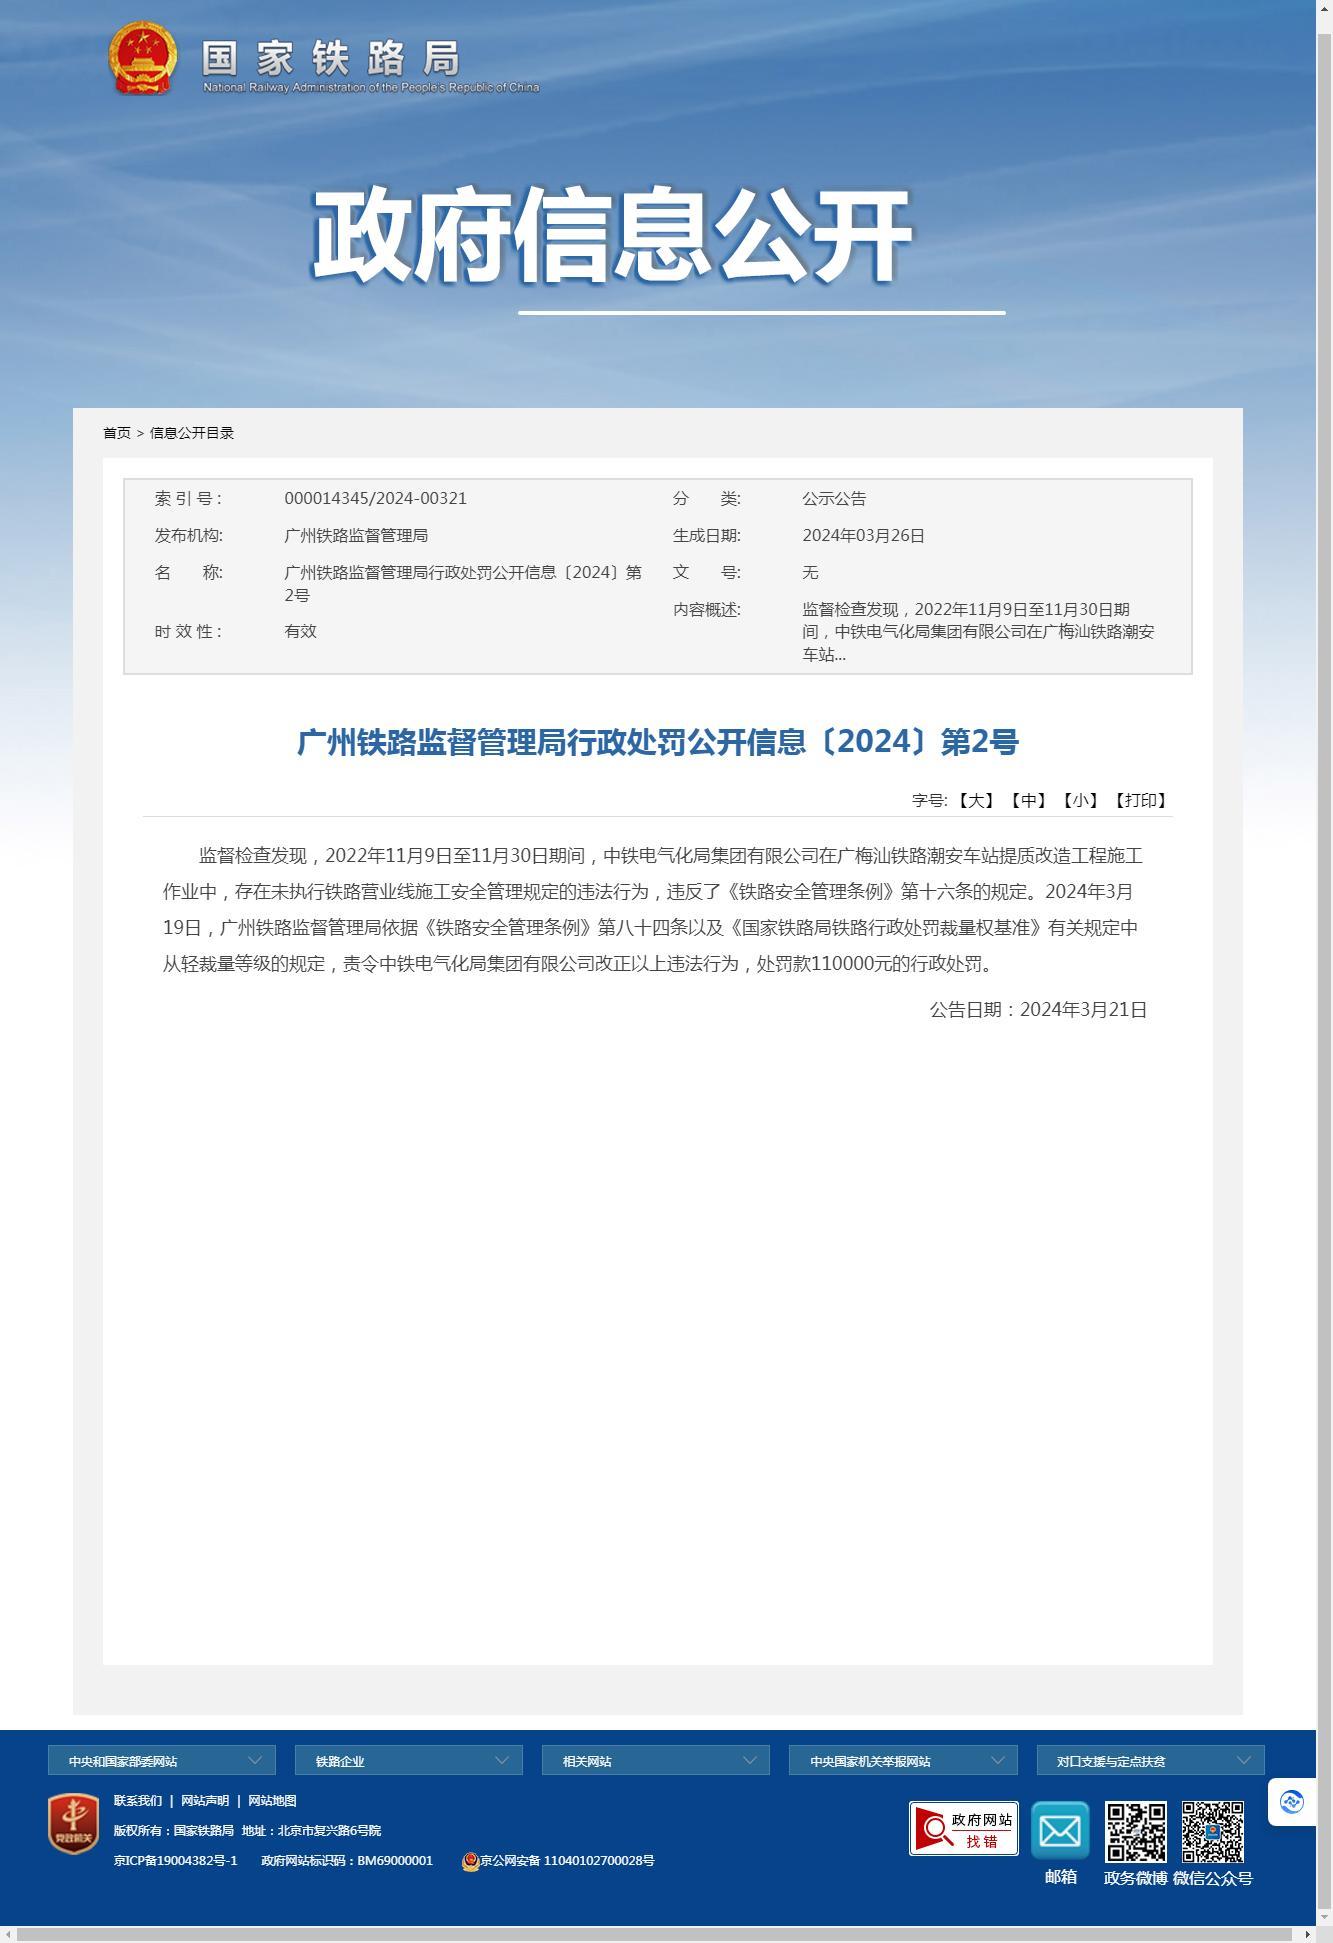 中铁电气化局集团有限公司因未执行铁路营业线施工安全管理规定被罚11万元